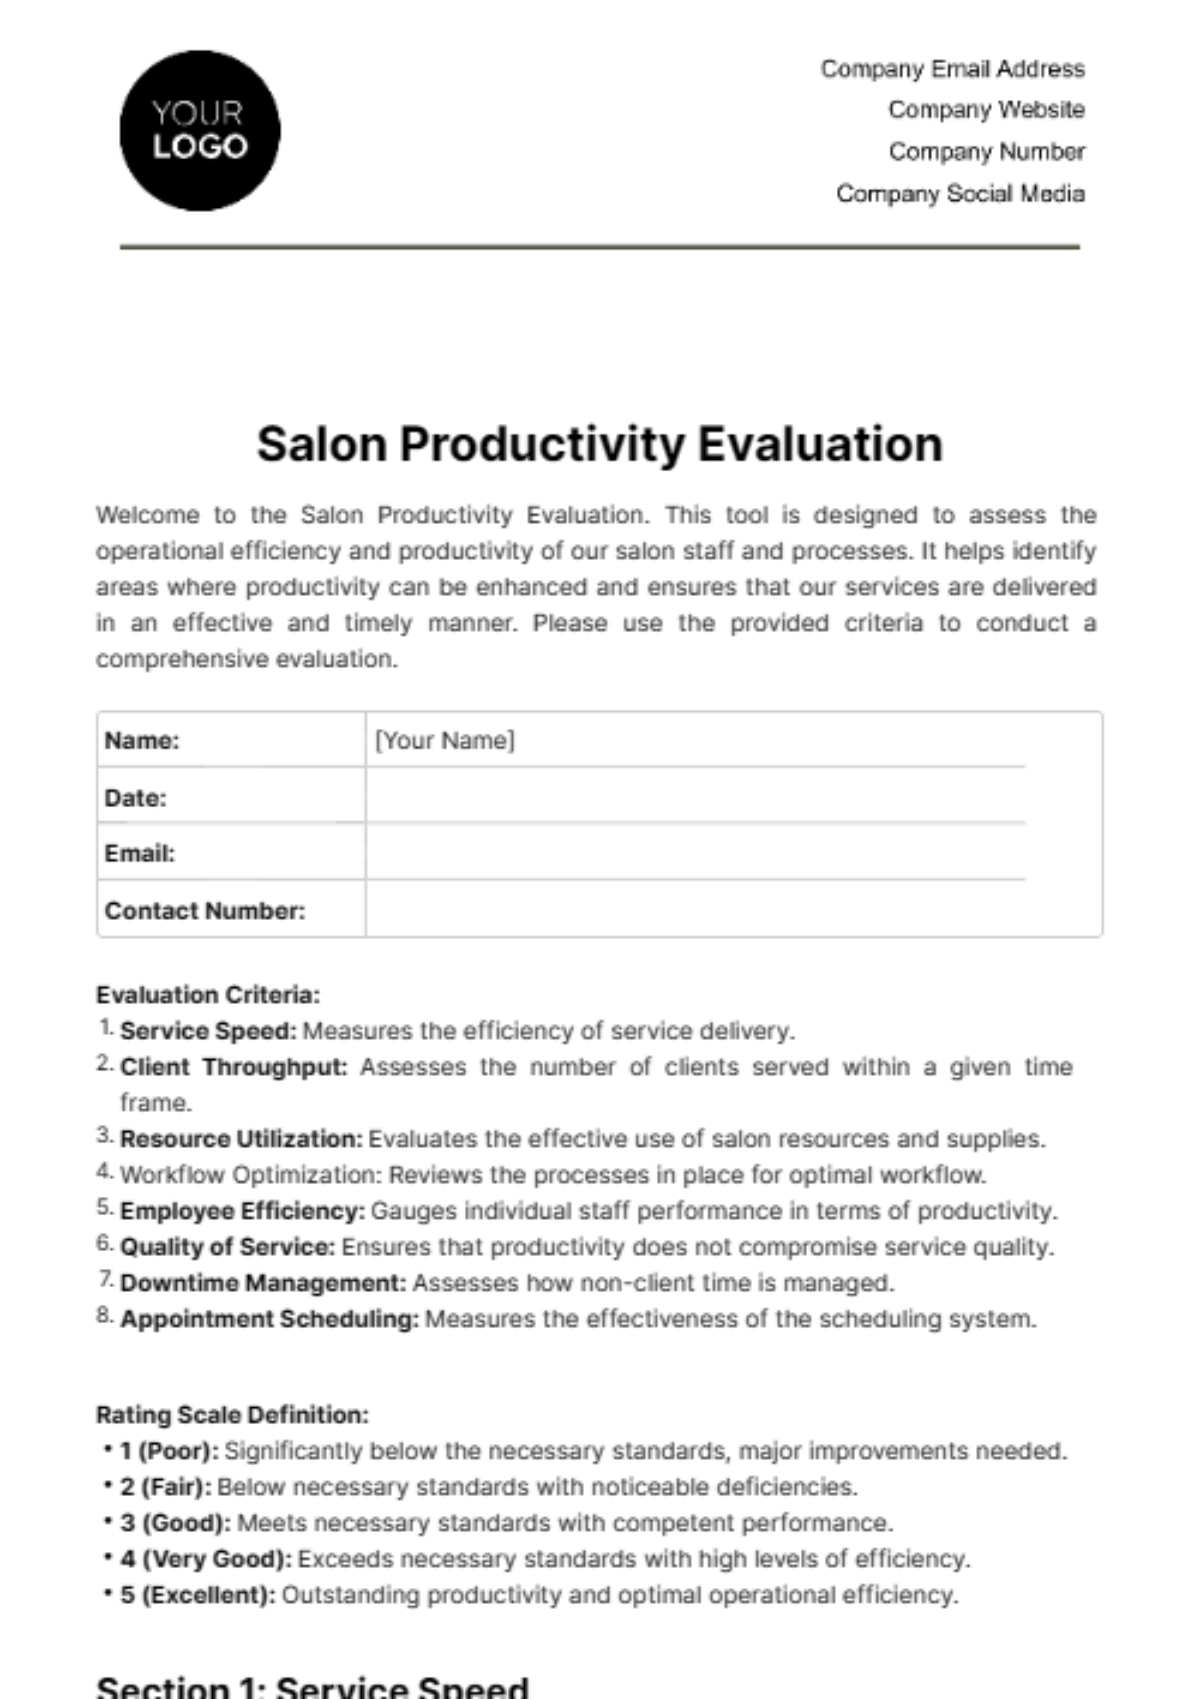 Salon Productivity Evaluation Template